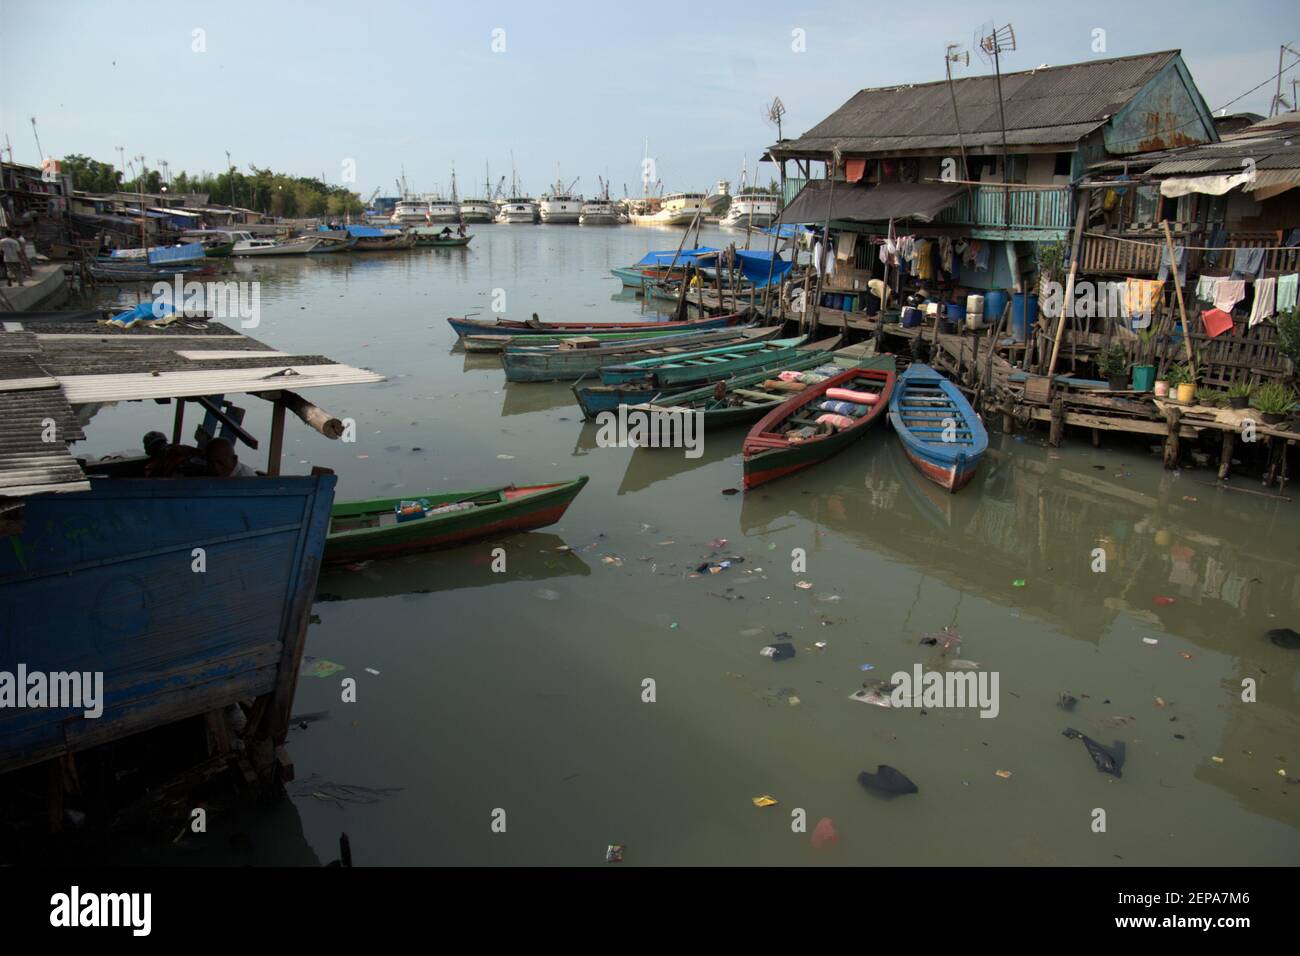 Des bateaux en bois et un village populairement connu sous le nom de Luar Batang, sur l'estuaire de la rivière Ciliwung, photographiés dans un fond de Sunda Kelapa traditionnel port dans la zone côtière de Jakarta, Indonésie (2008). Banque D'Images